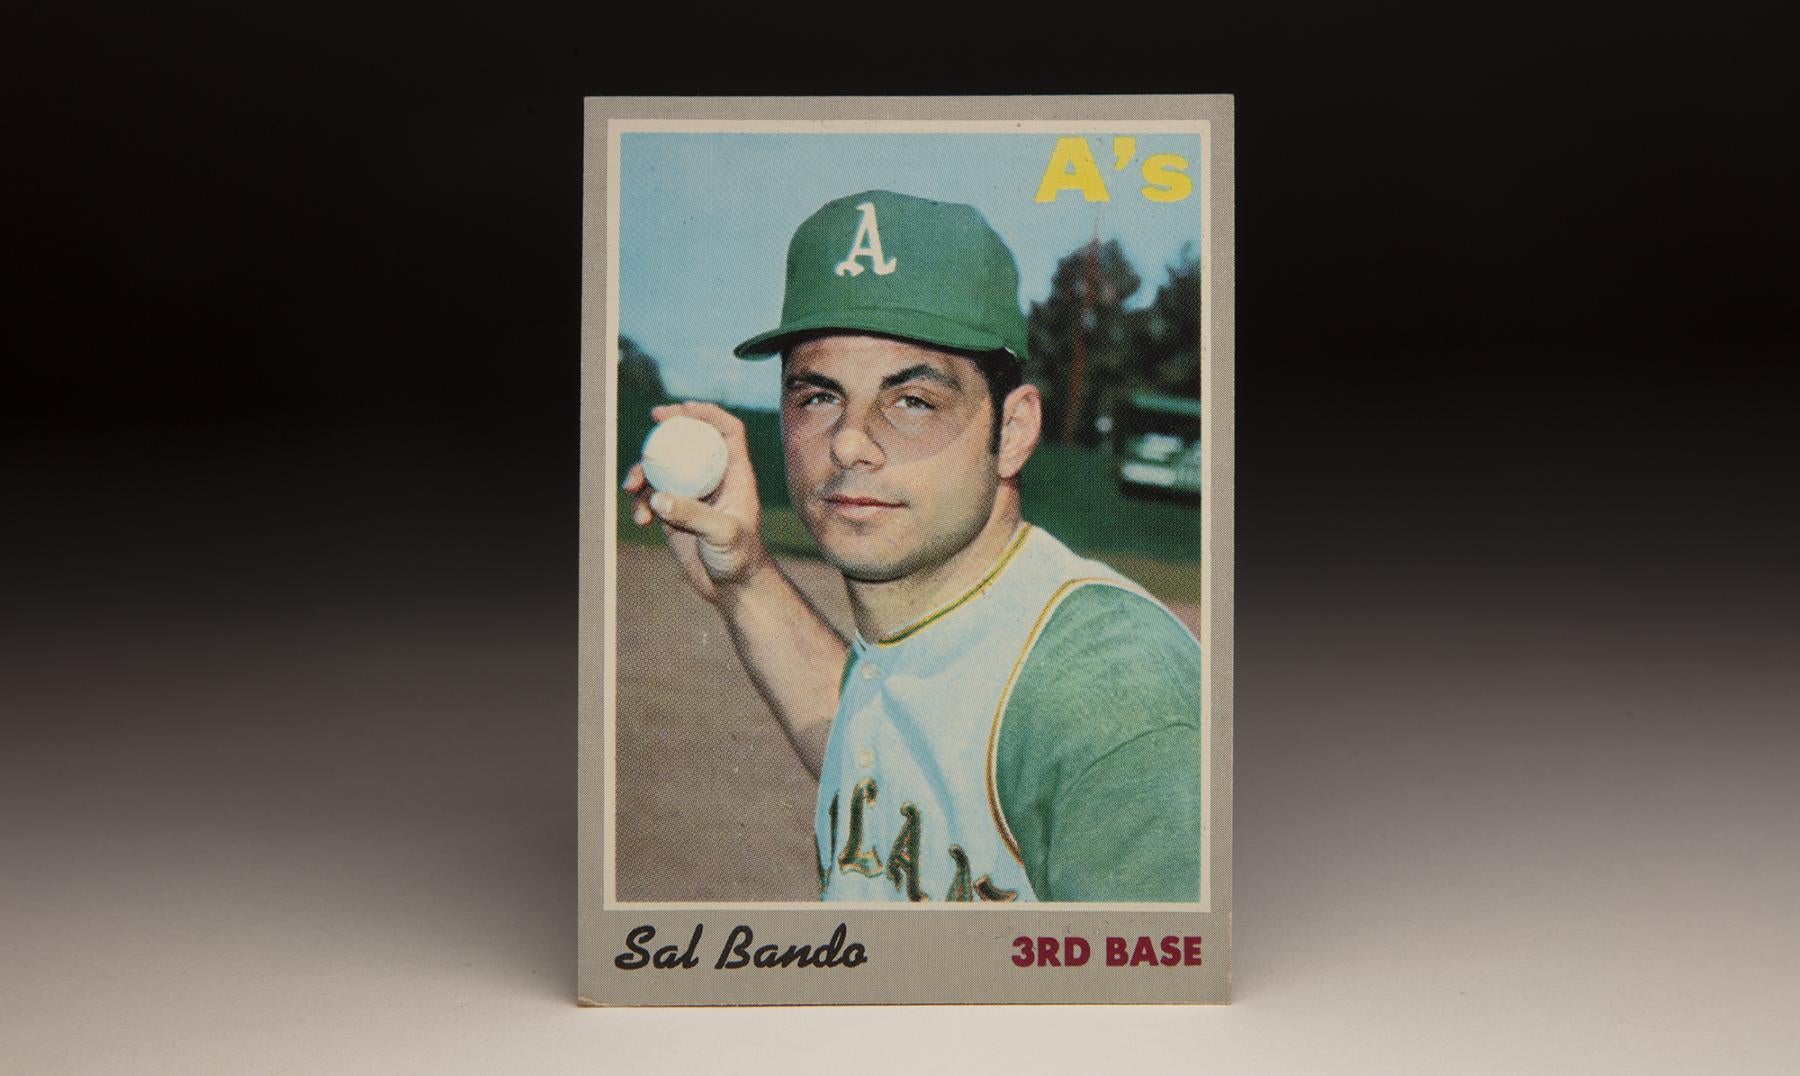 ASU's 50 Best Professional Athletes: No. 22 Baseball's Sal Bando